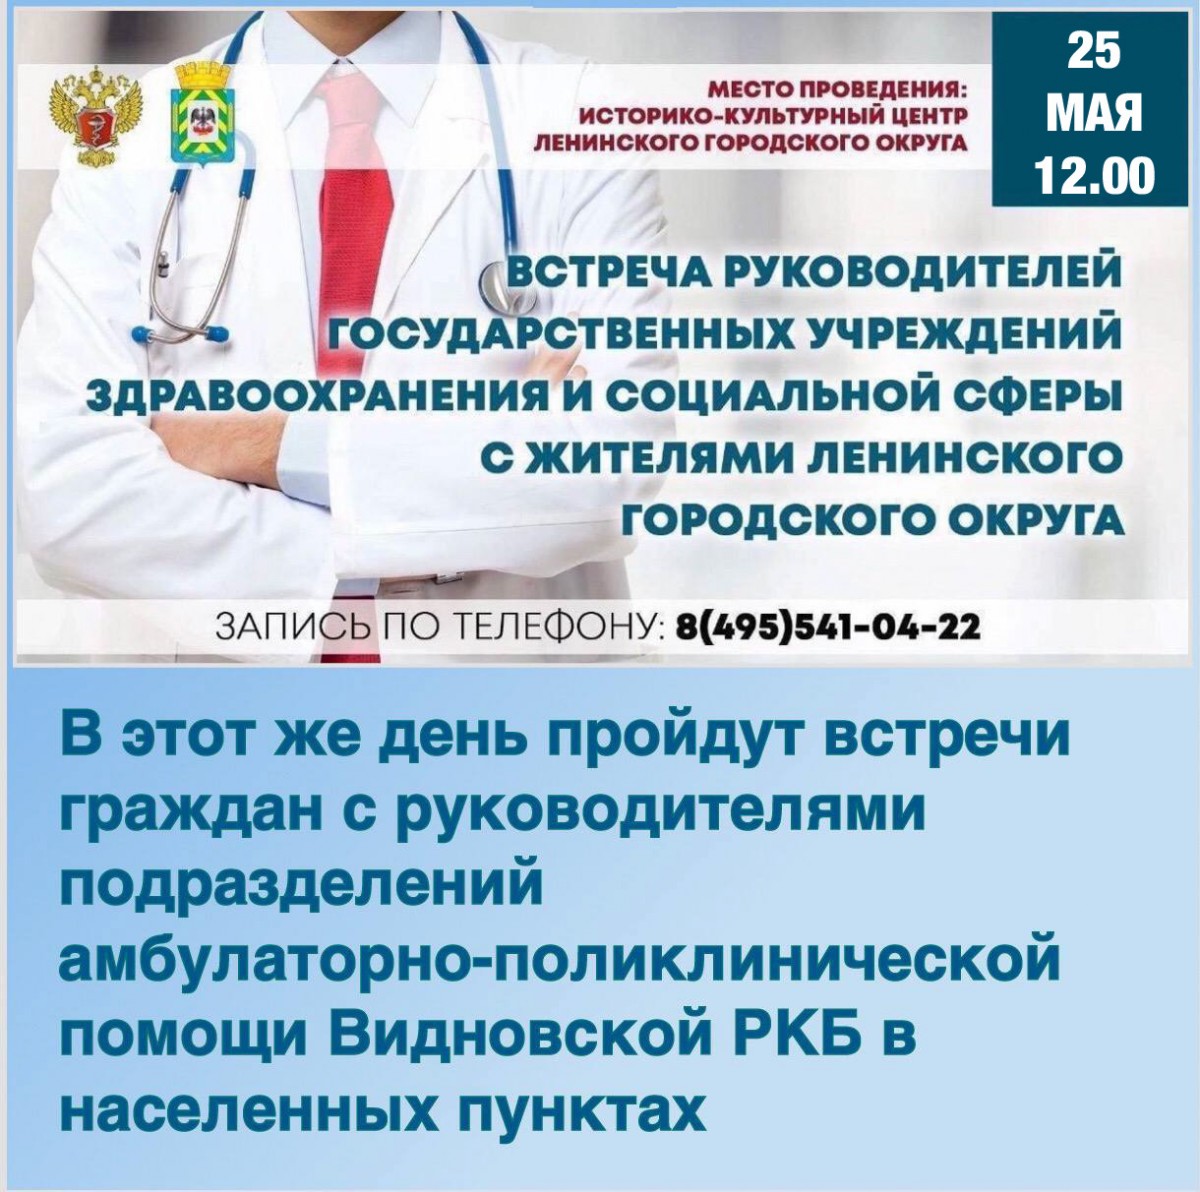 25 мая пройдет встреча руководителей учреждений здравоохранения, расположенных на территории Ленинского городского округа, с жителями муниципалитета